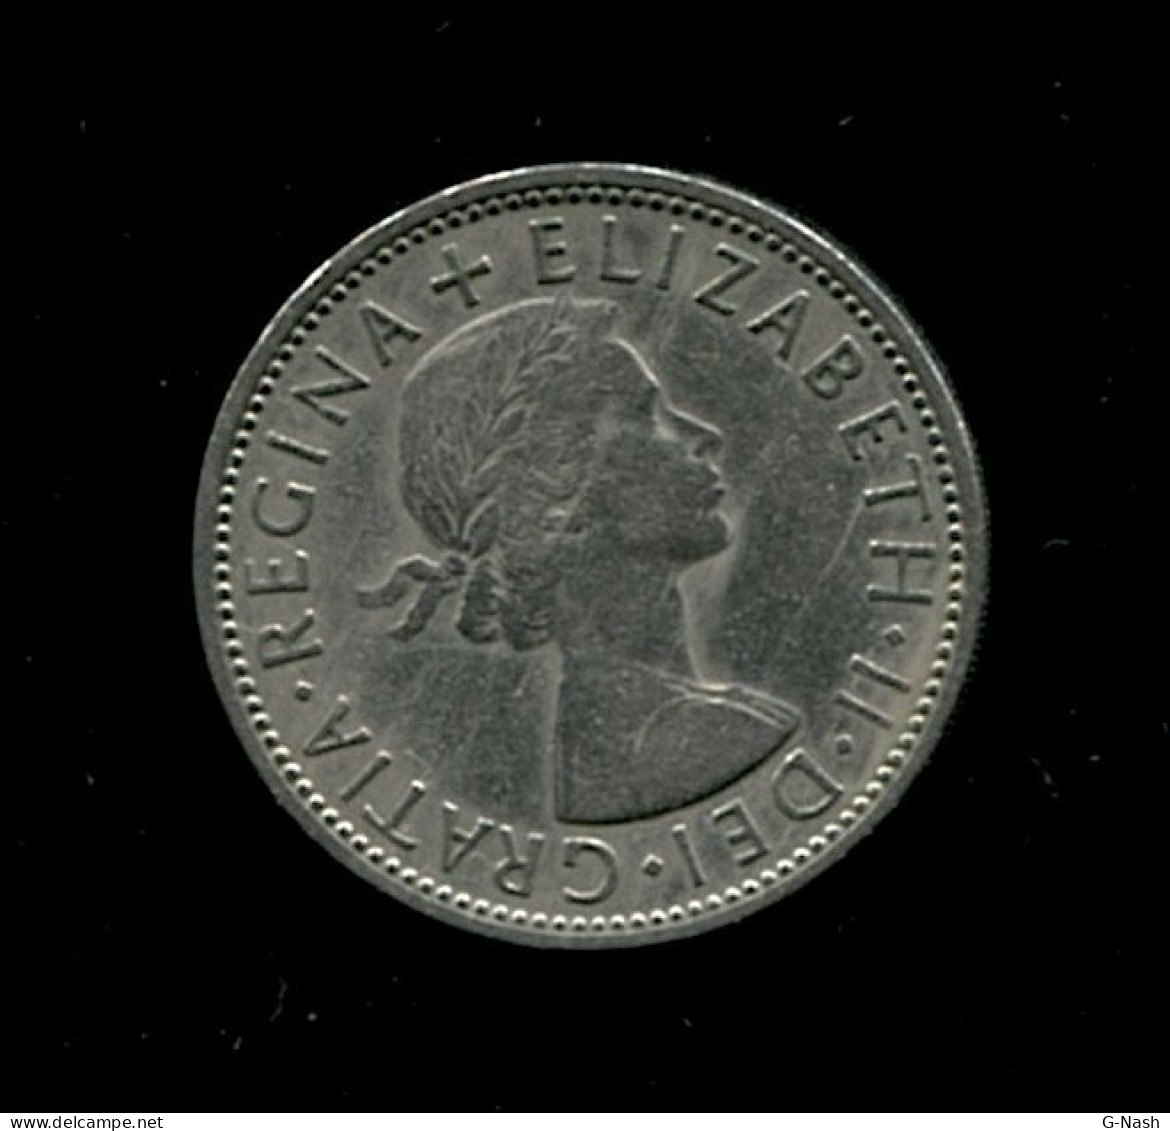 GRANDE-BRETAGNE - Pièce De 2 Shillings (1960) - J. 1 Florin / 2 Shillings